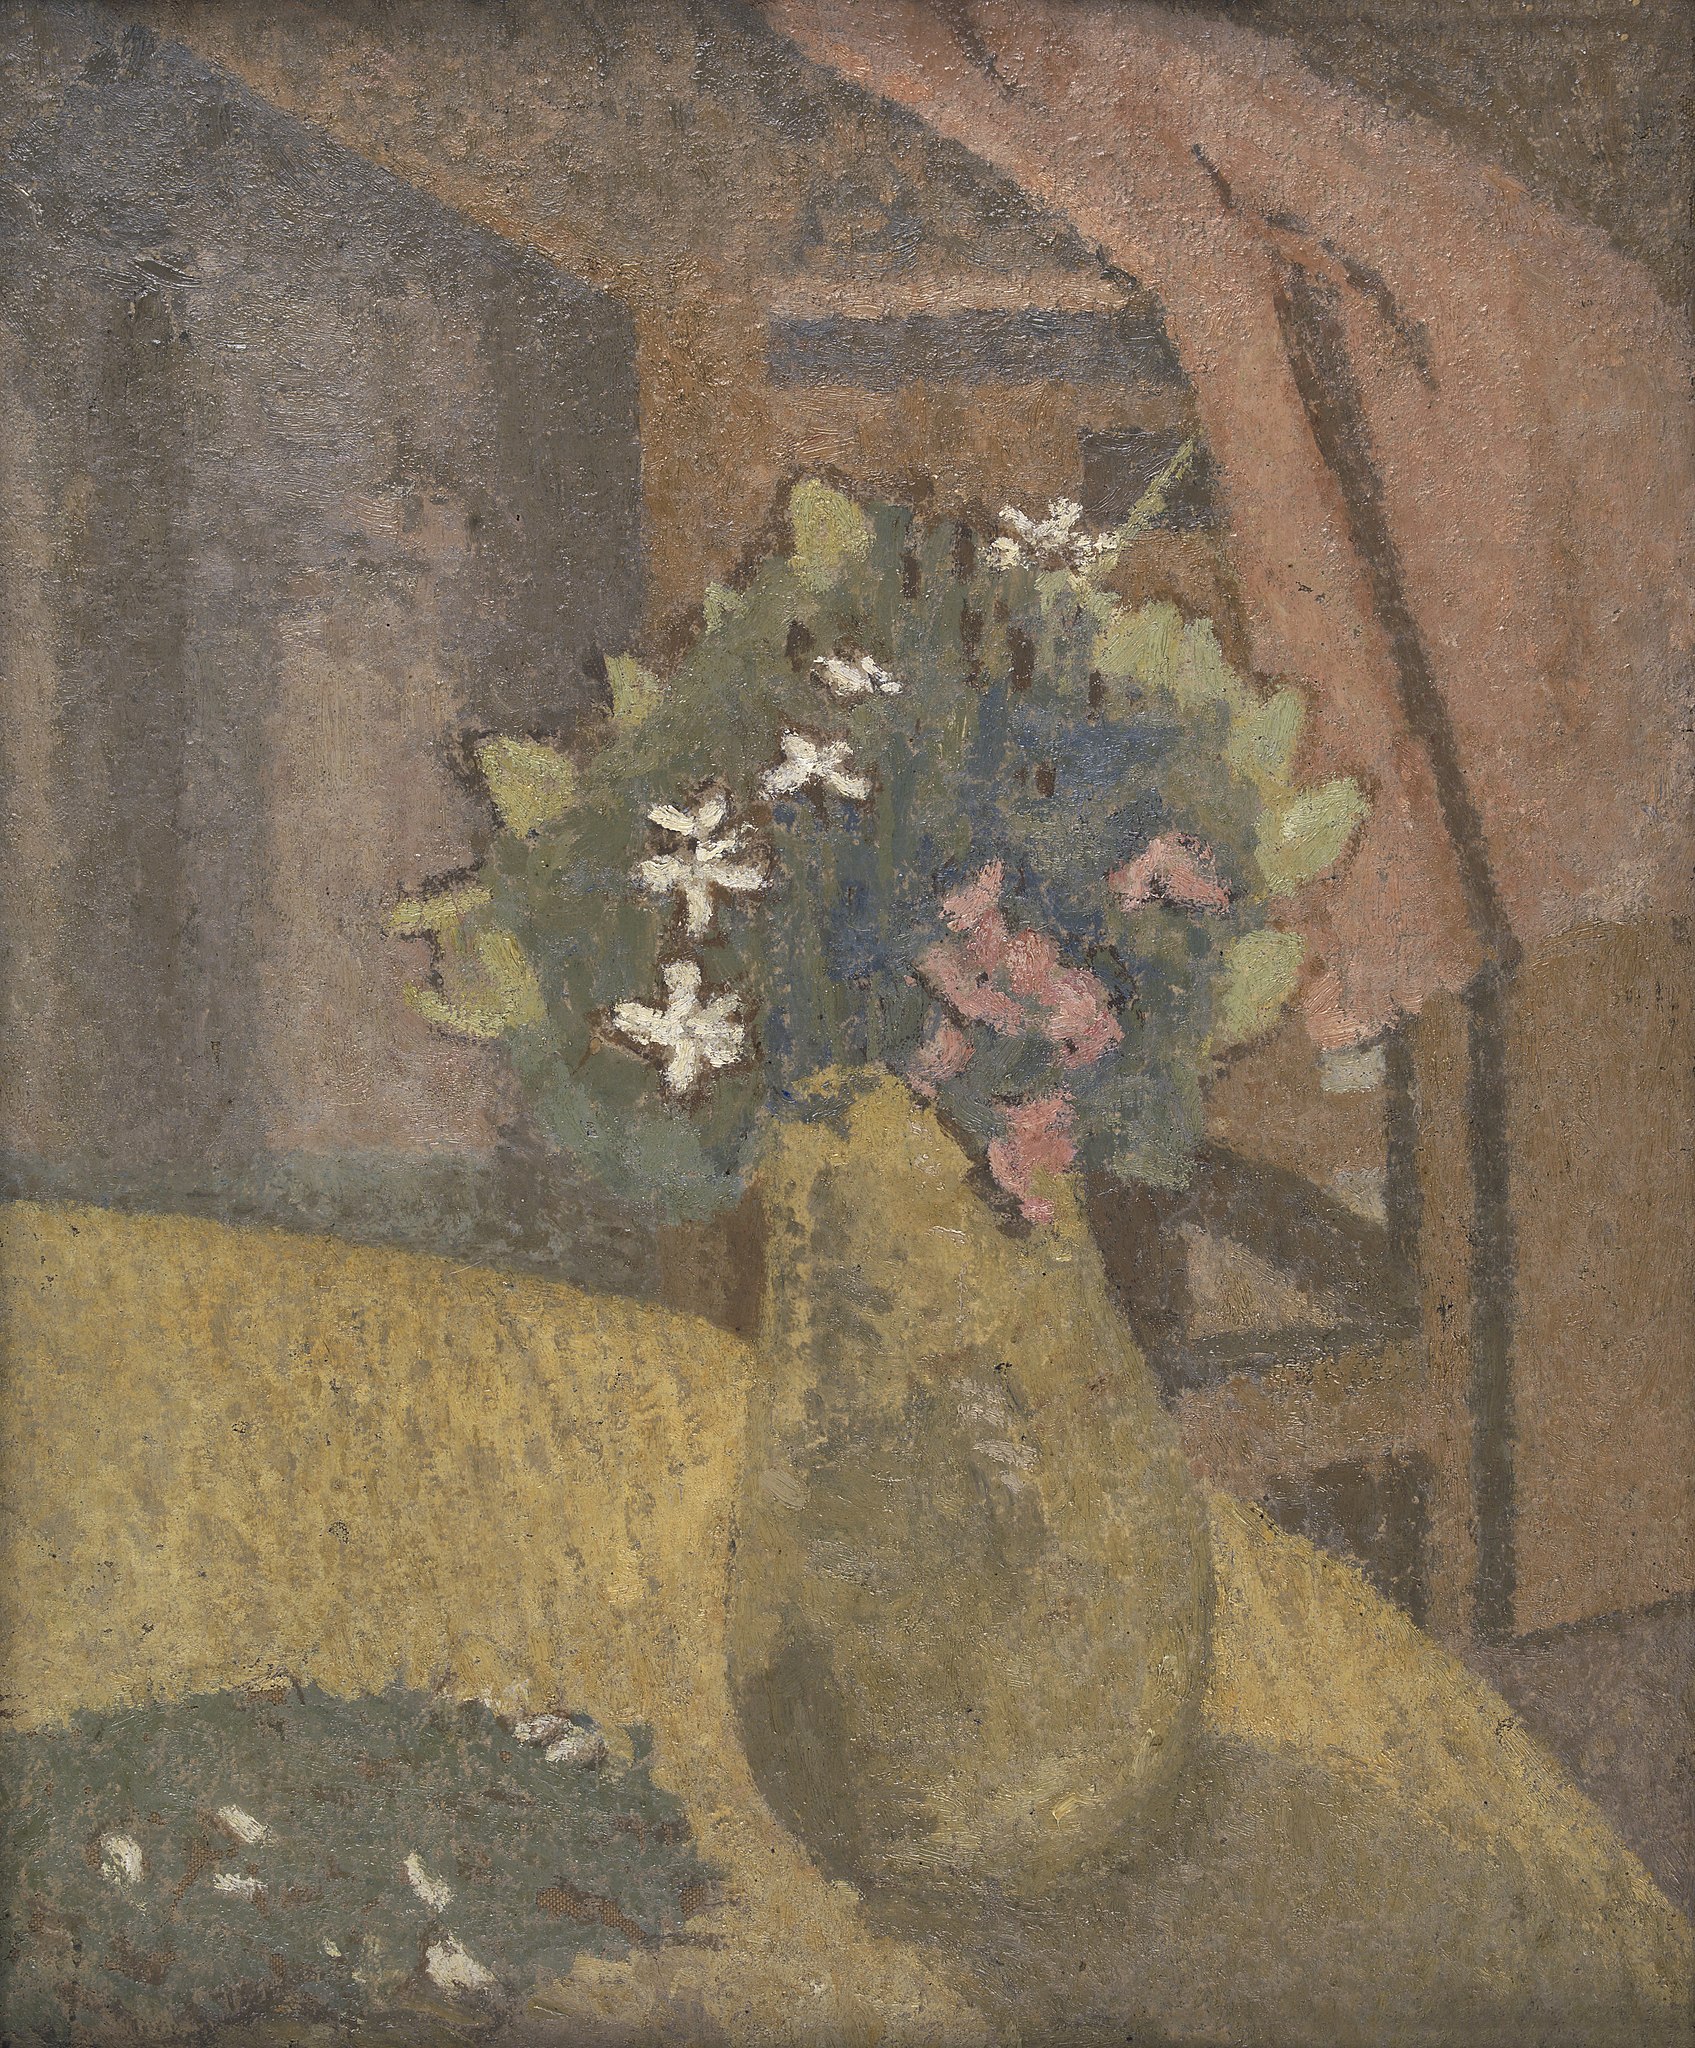 Vaso de Flores by Gwen John - Década de 1910 - 40 x 32 cm 